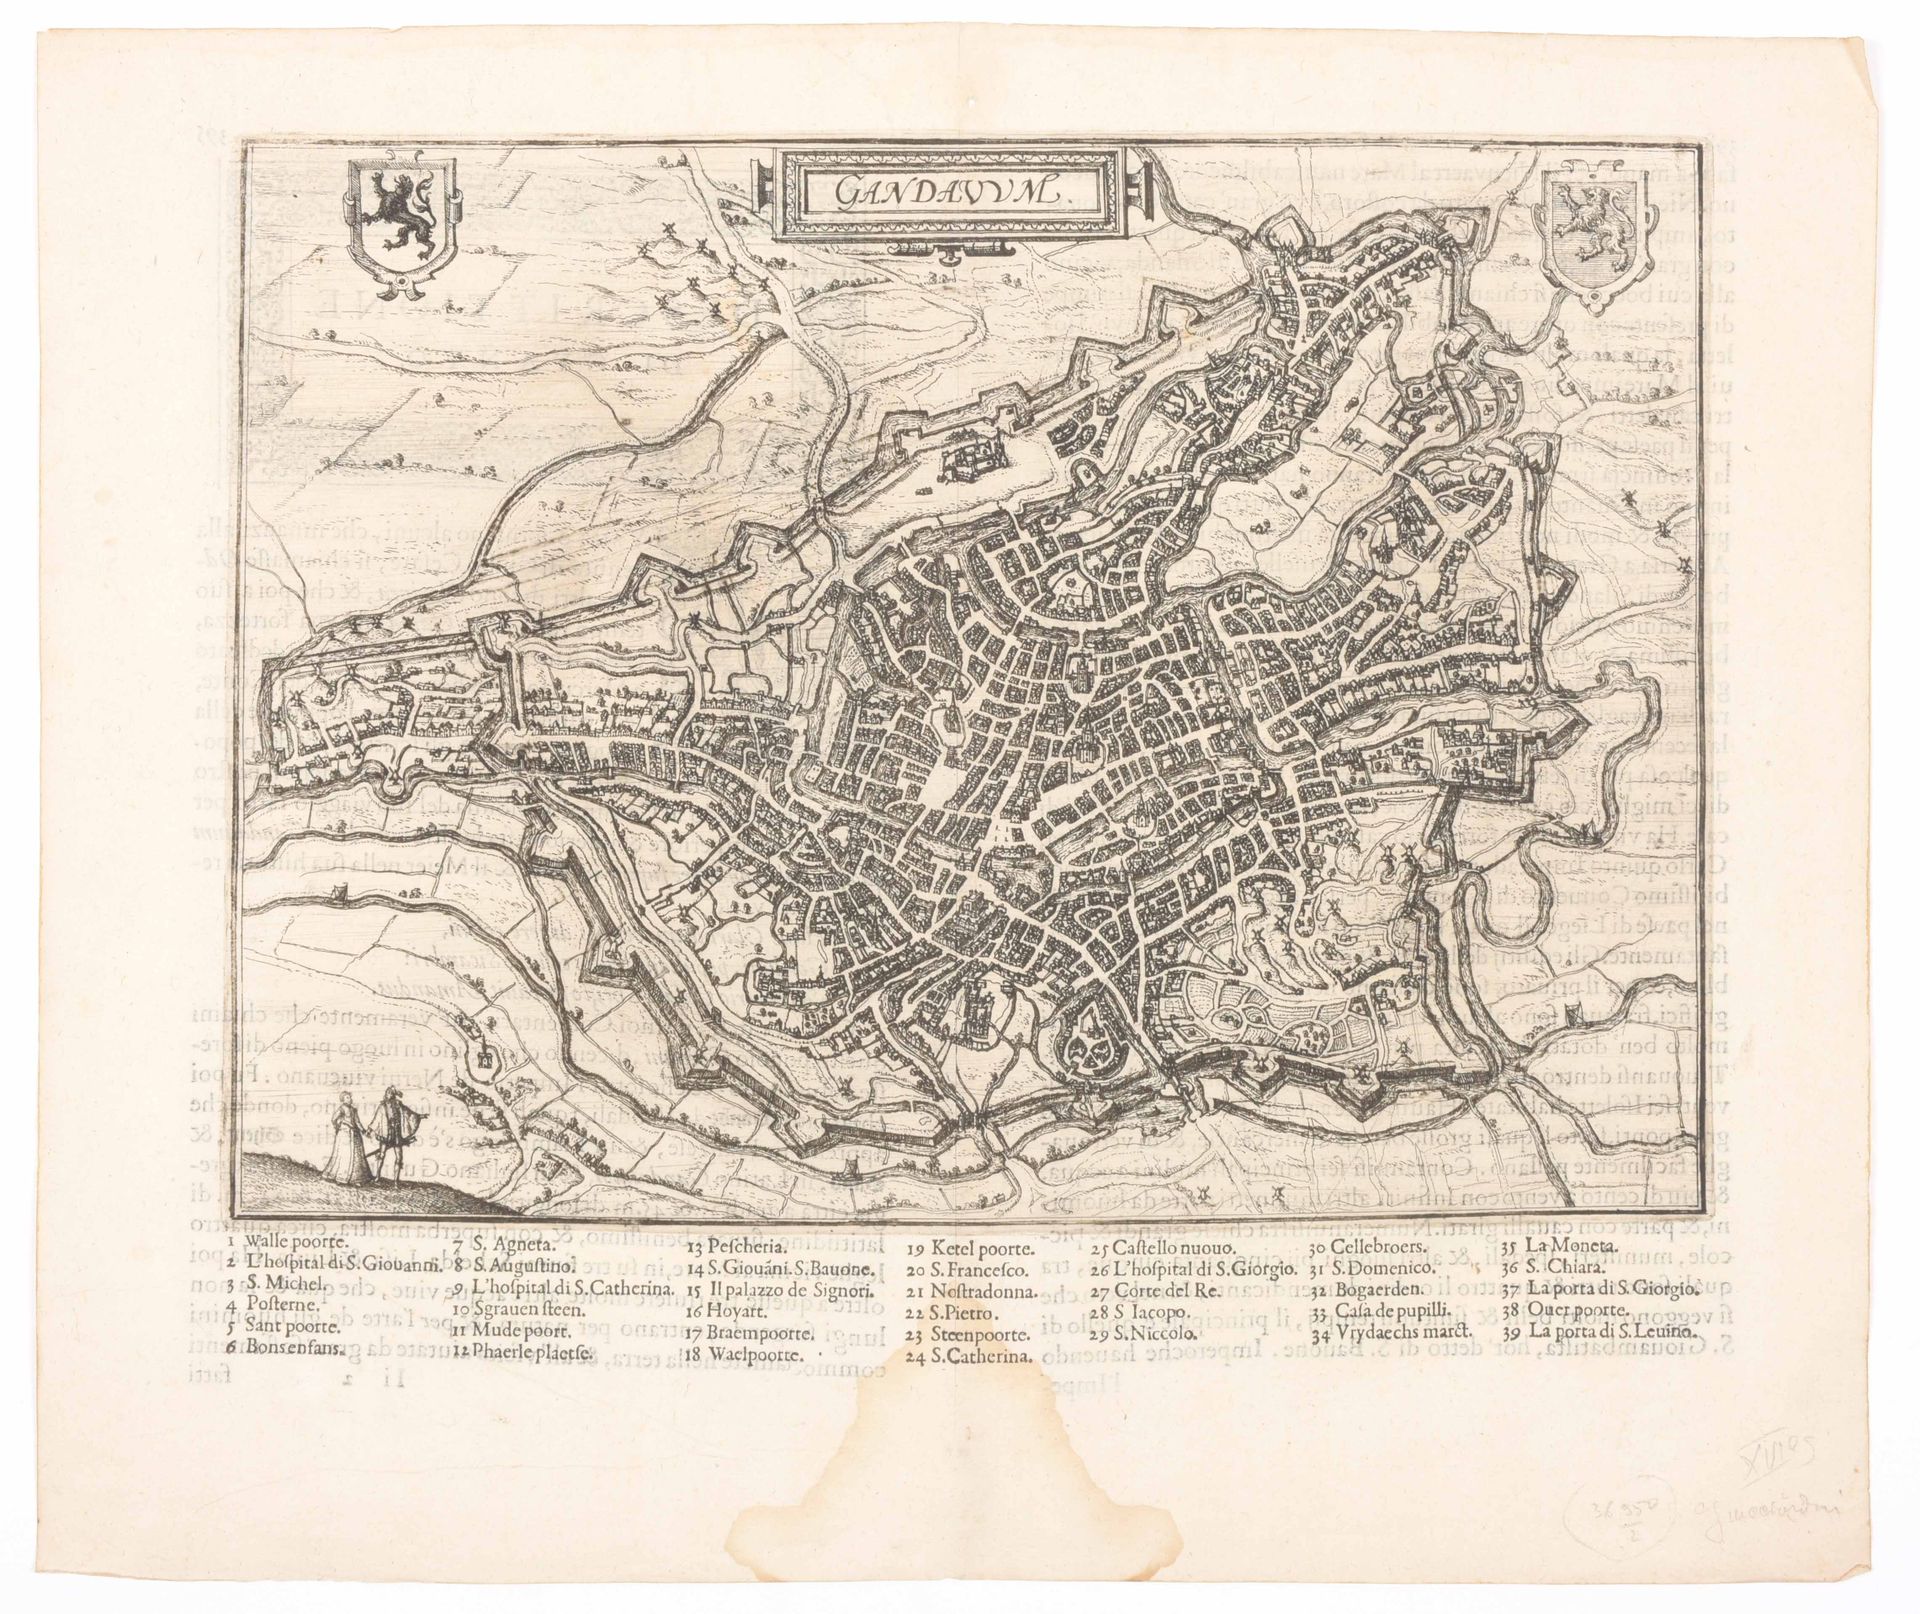 [Gent] Gandavum amplissima Flandria

Kopergravur (33,5 x 47,5 cm) mit Stadtplati&hellip;